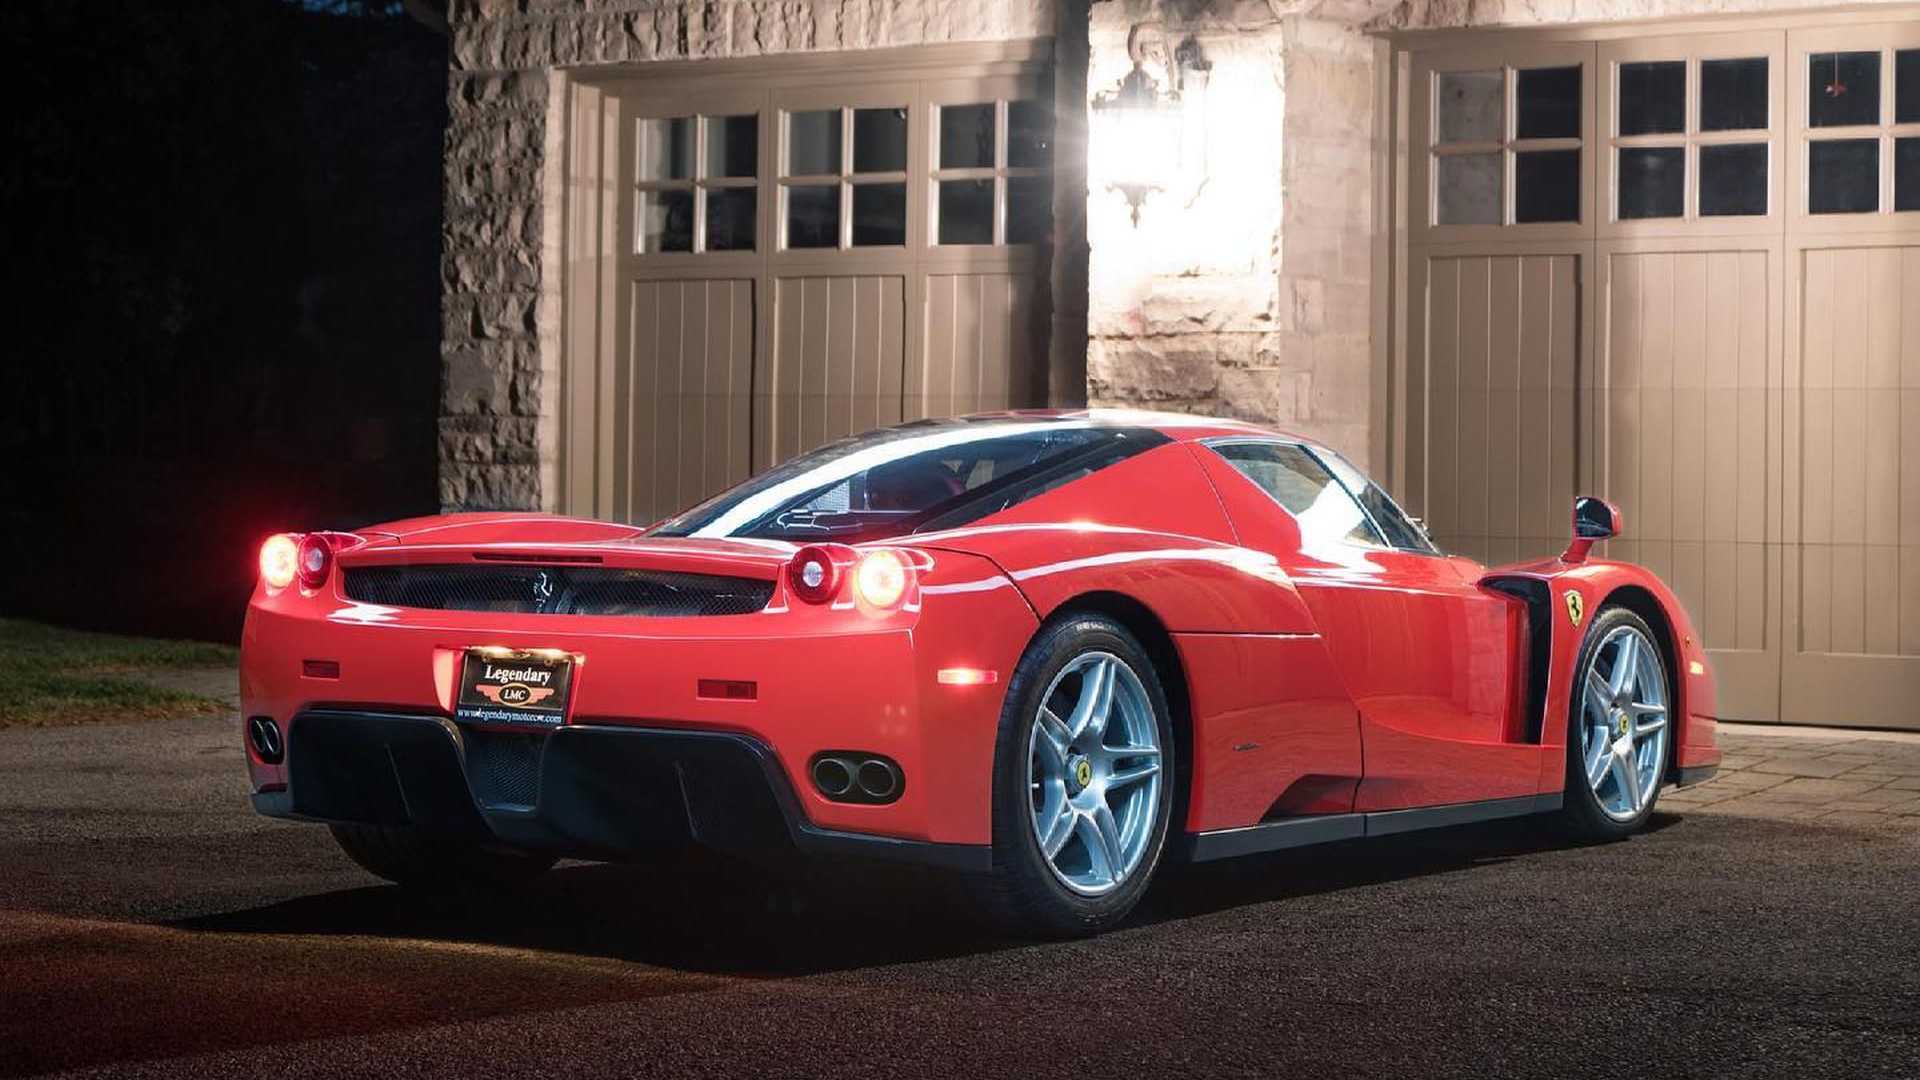 Sau 15 năm sử dụng và hơn 500km, Ferrari Enzo được bán lại với giá 3,8 triệu USD - Ảnh 2.